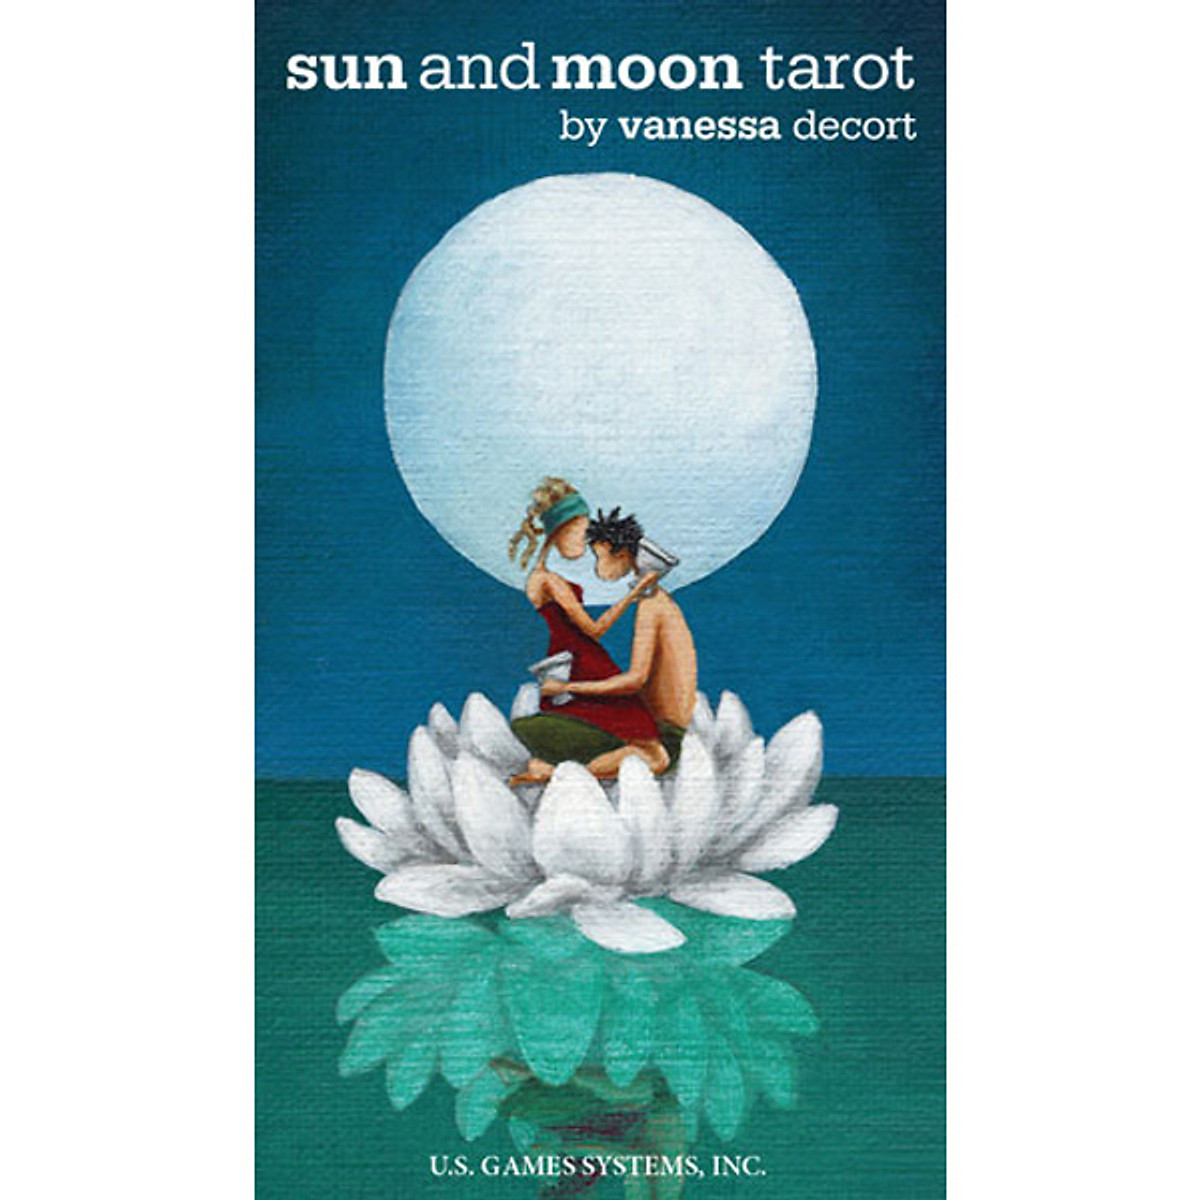 Sun and Moon Tarot – Bộ bài mang âm hưởng phong cách Thoth